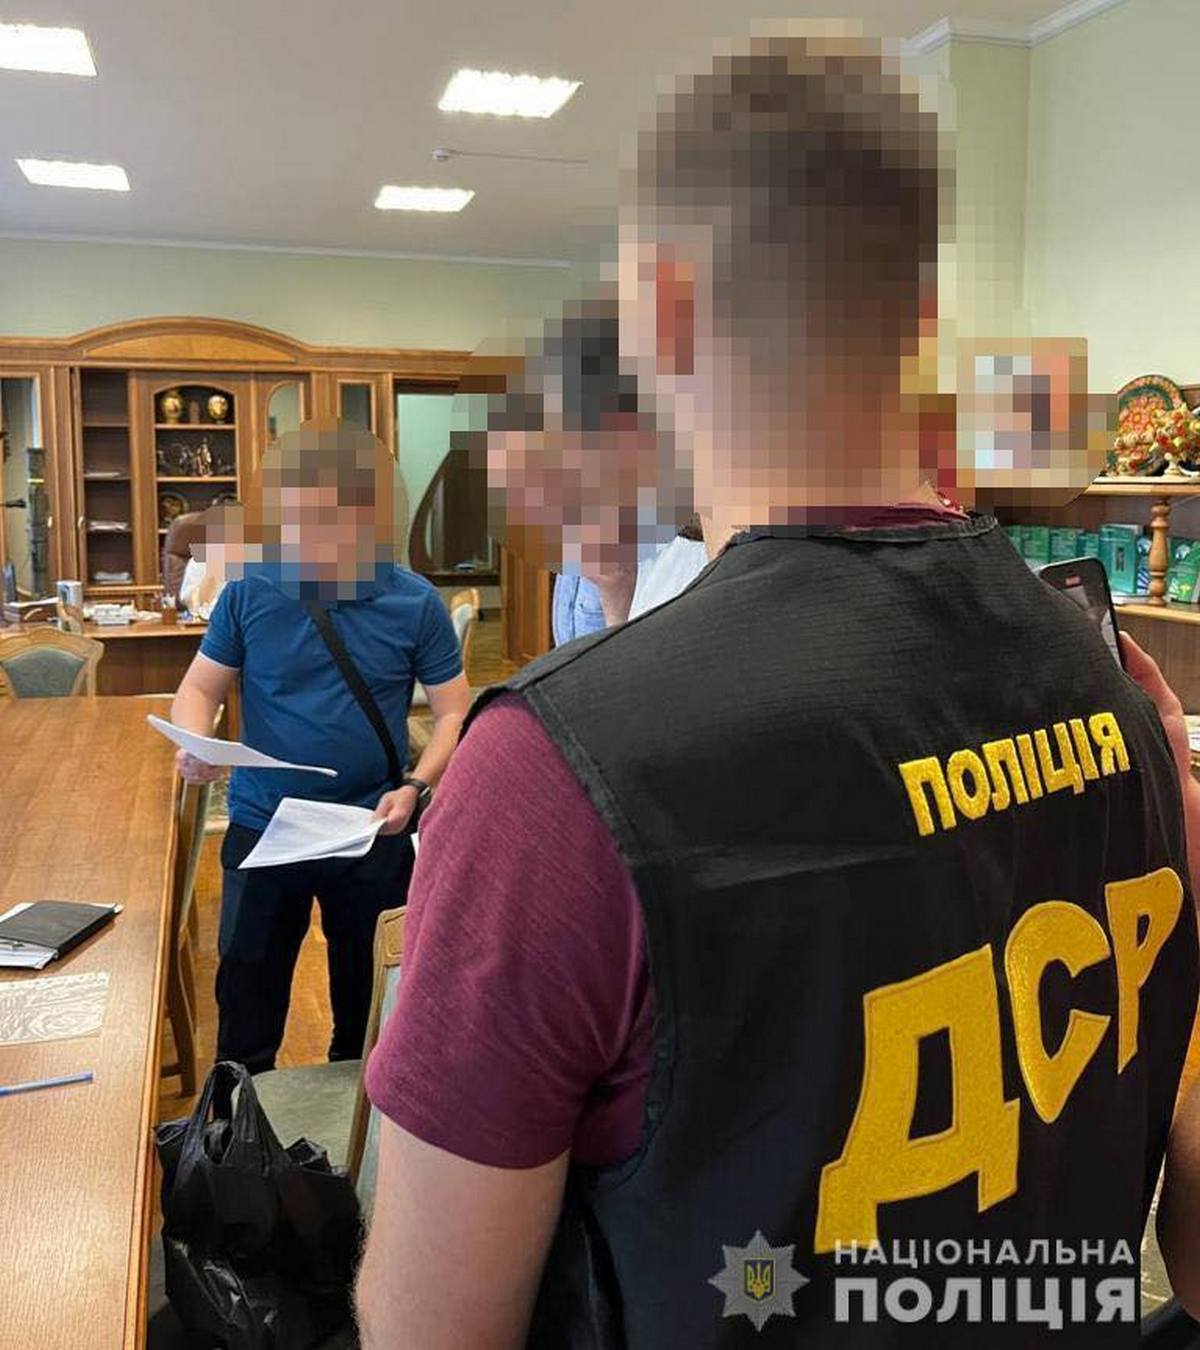 Правоохранители Днепропетровской области сообщили о подозрении ректору одного из университетов Днепропетровской области и руководителю подрядной организации.